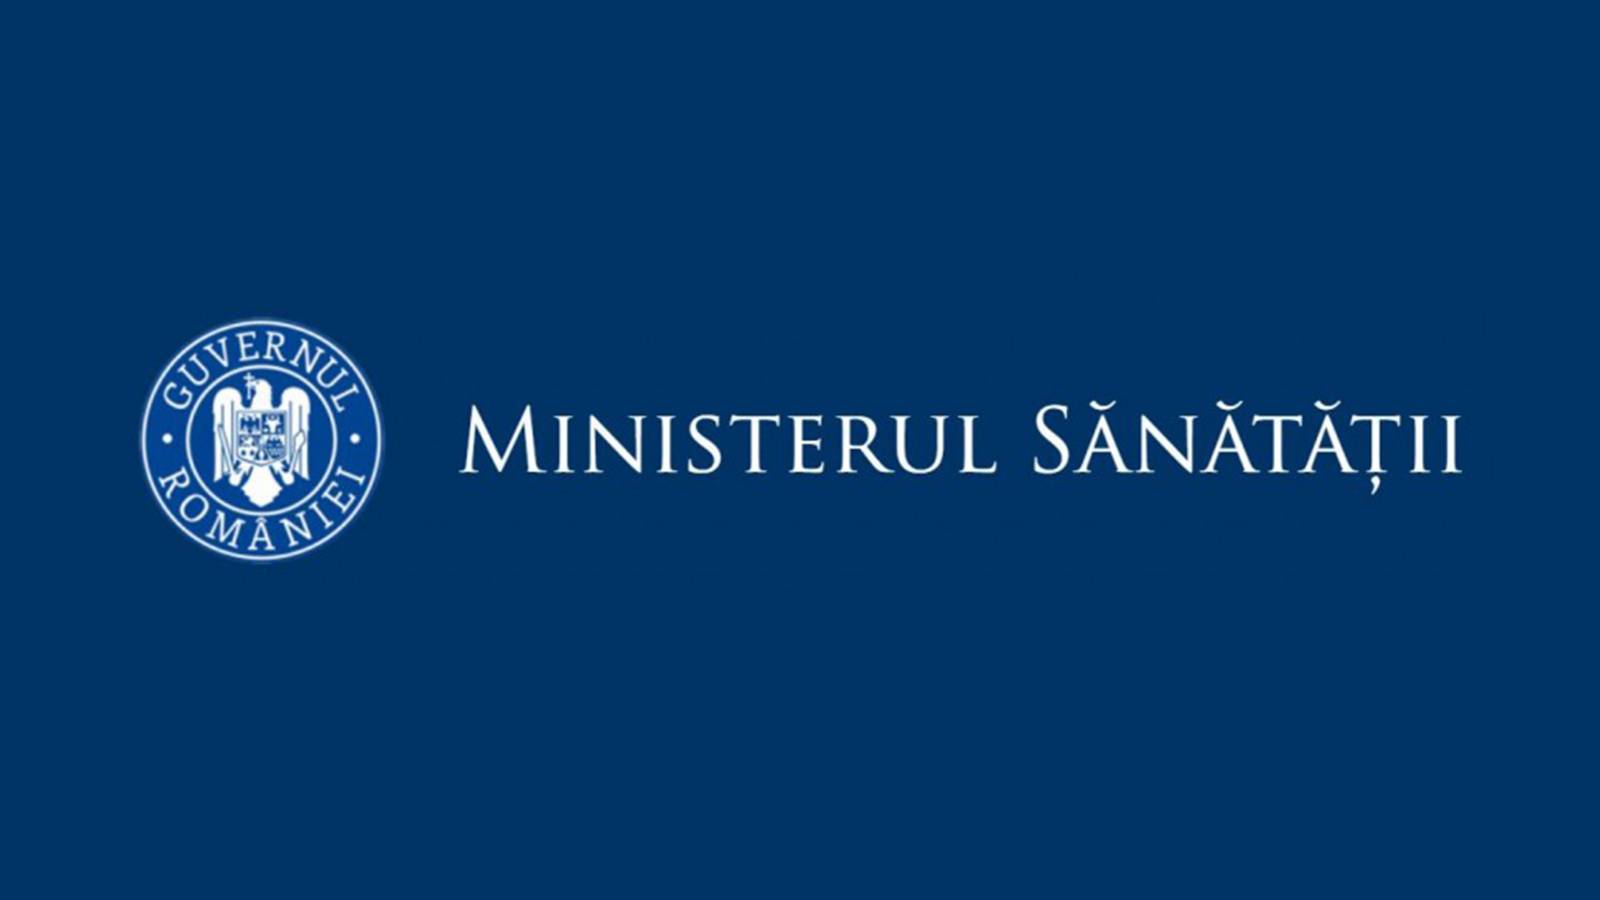 Ministerium für Gesundheitsdaten zur Pandemie Rumänien